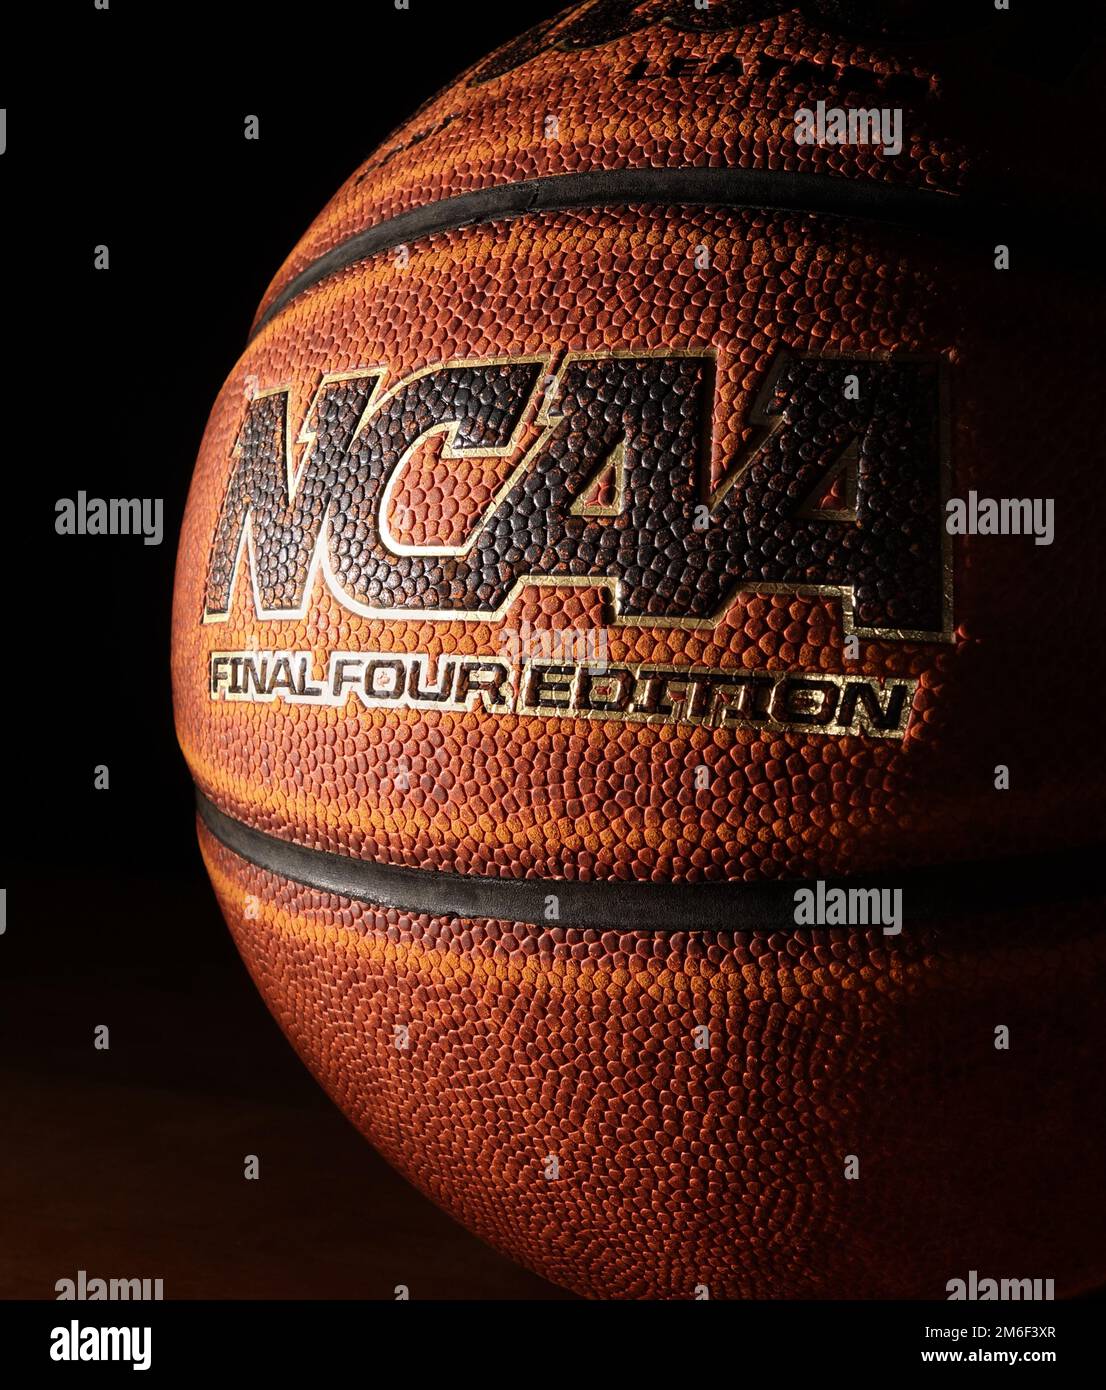 RALEIGH,NC/USA - 12-13-2018: An NCAA Final Four Edition basketball on hardwood Stock Photo